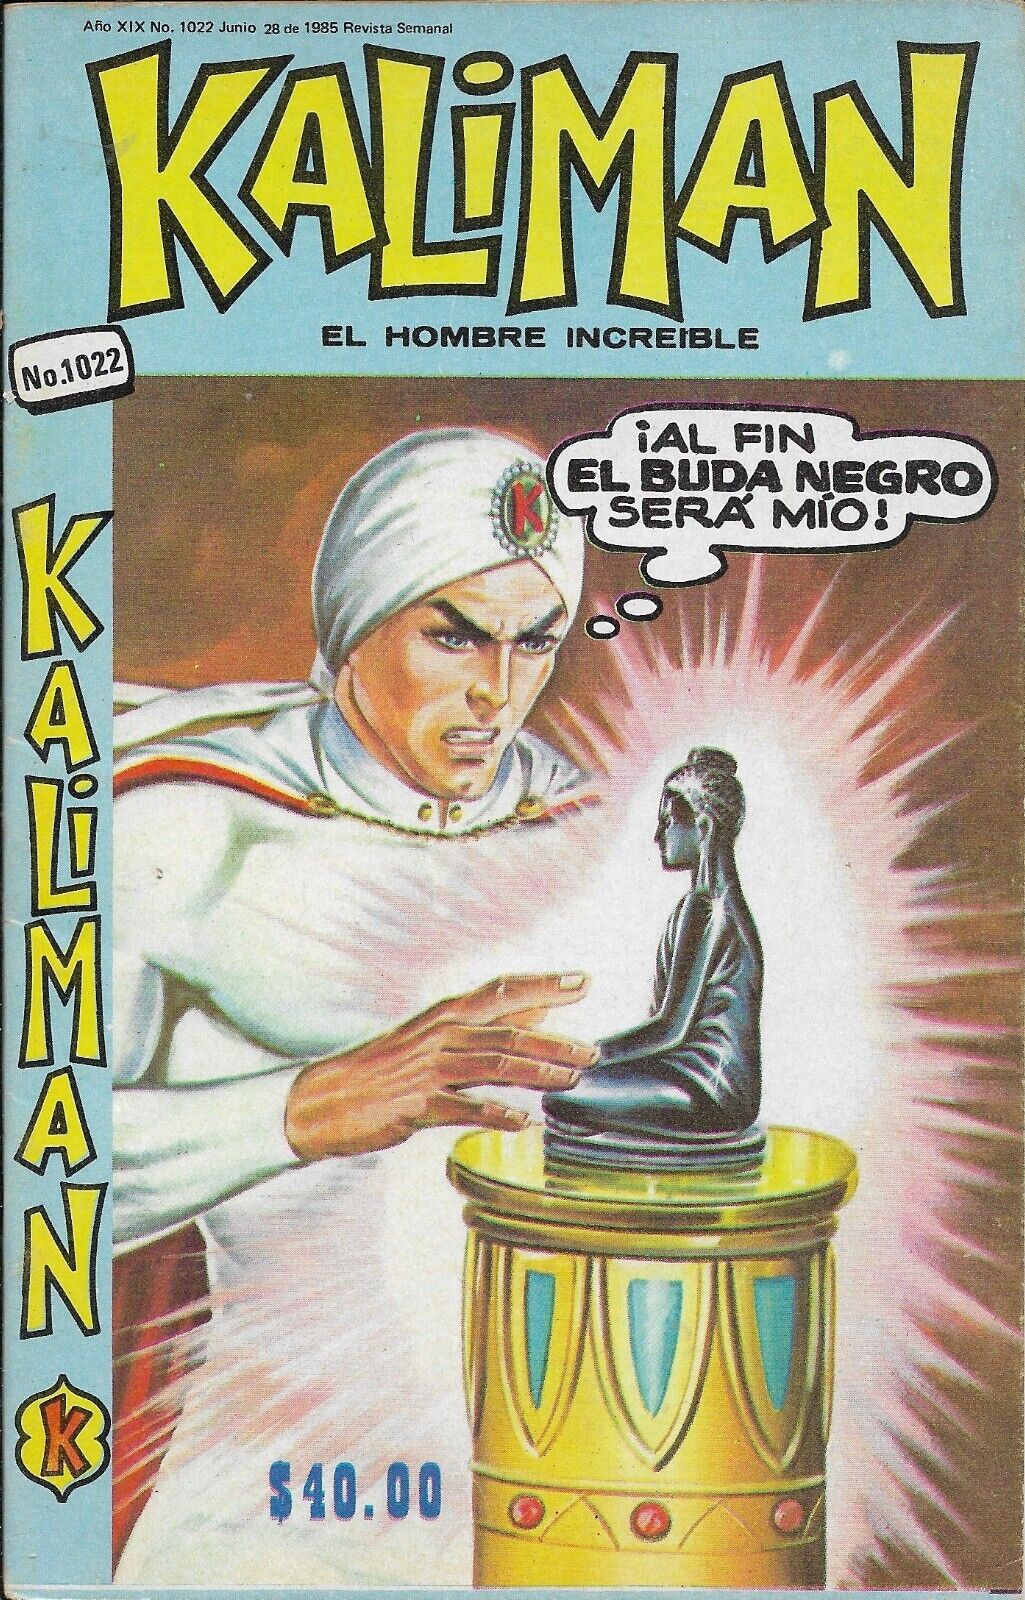 Kaliman El Hombre Increible #1022 - Junio 28, 1985